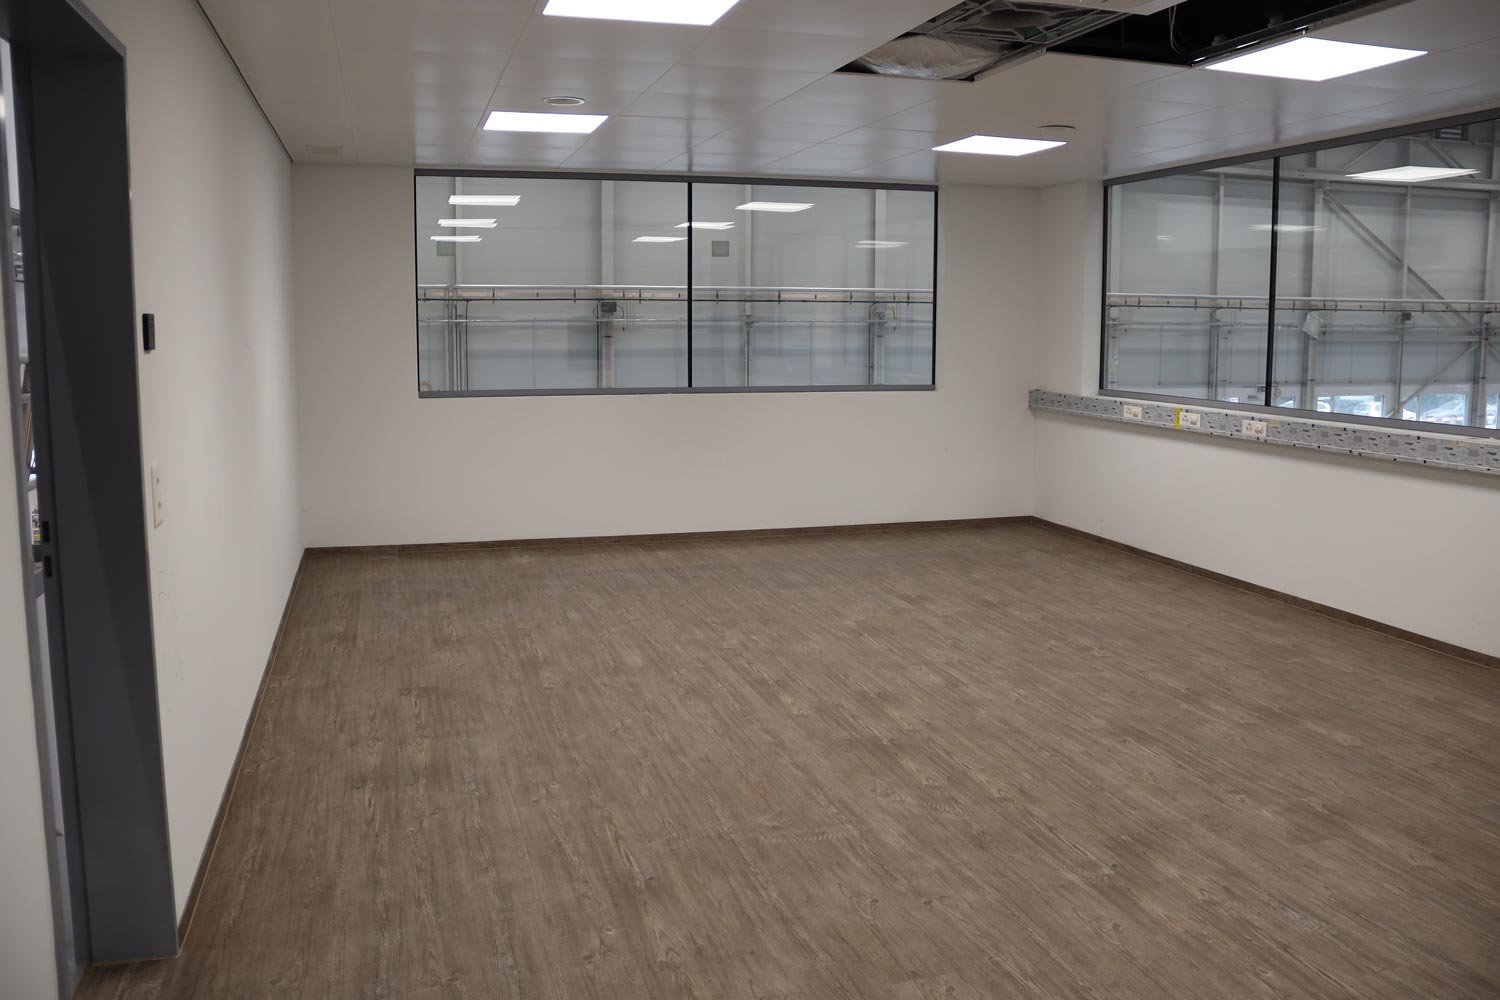 Sitzungszimmer mit brauen Parkettboden und weissen Wänden.